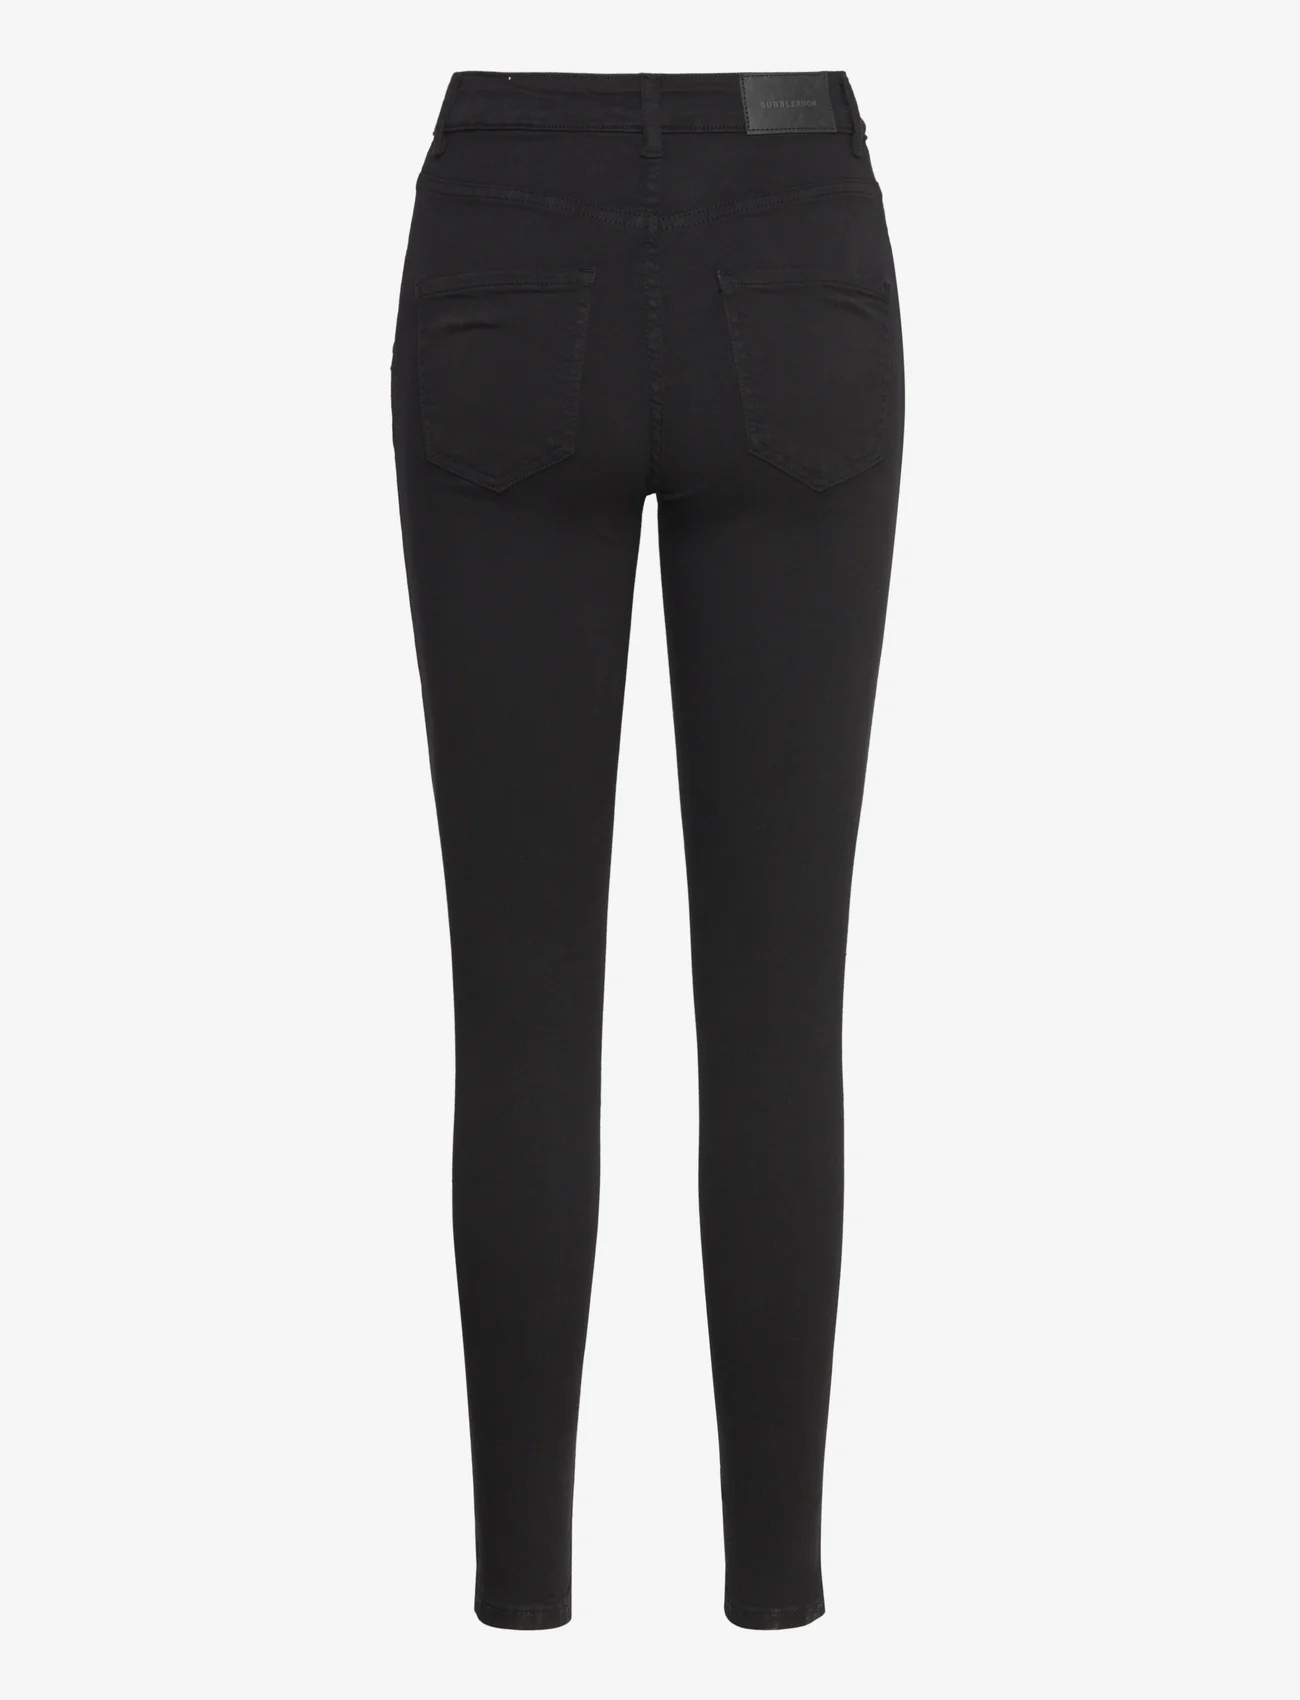 Bubbleroom - Adina Highwaist Jeans - laagste prijzen - black - 1